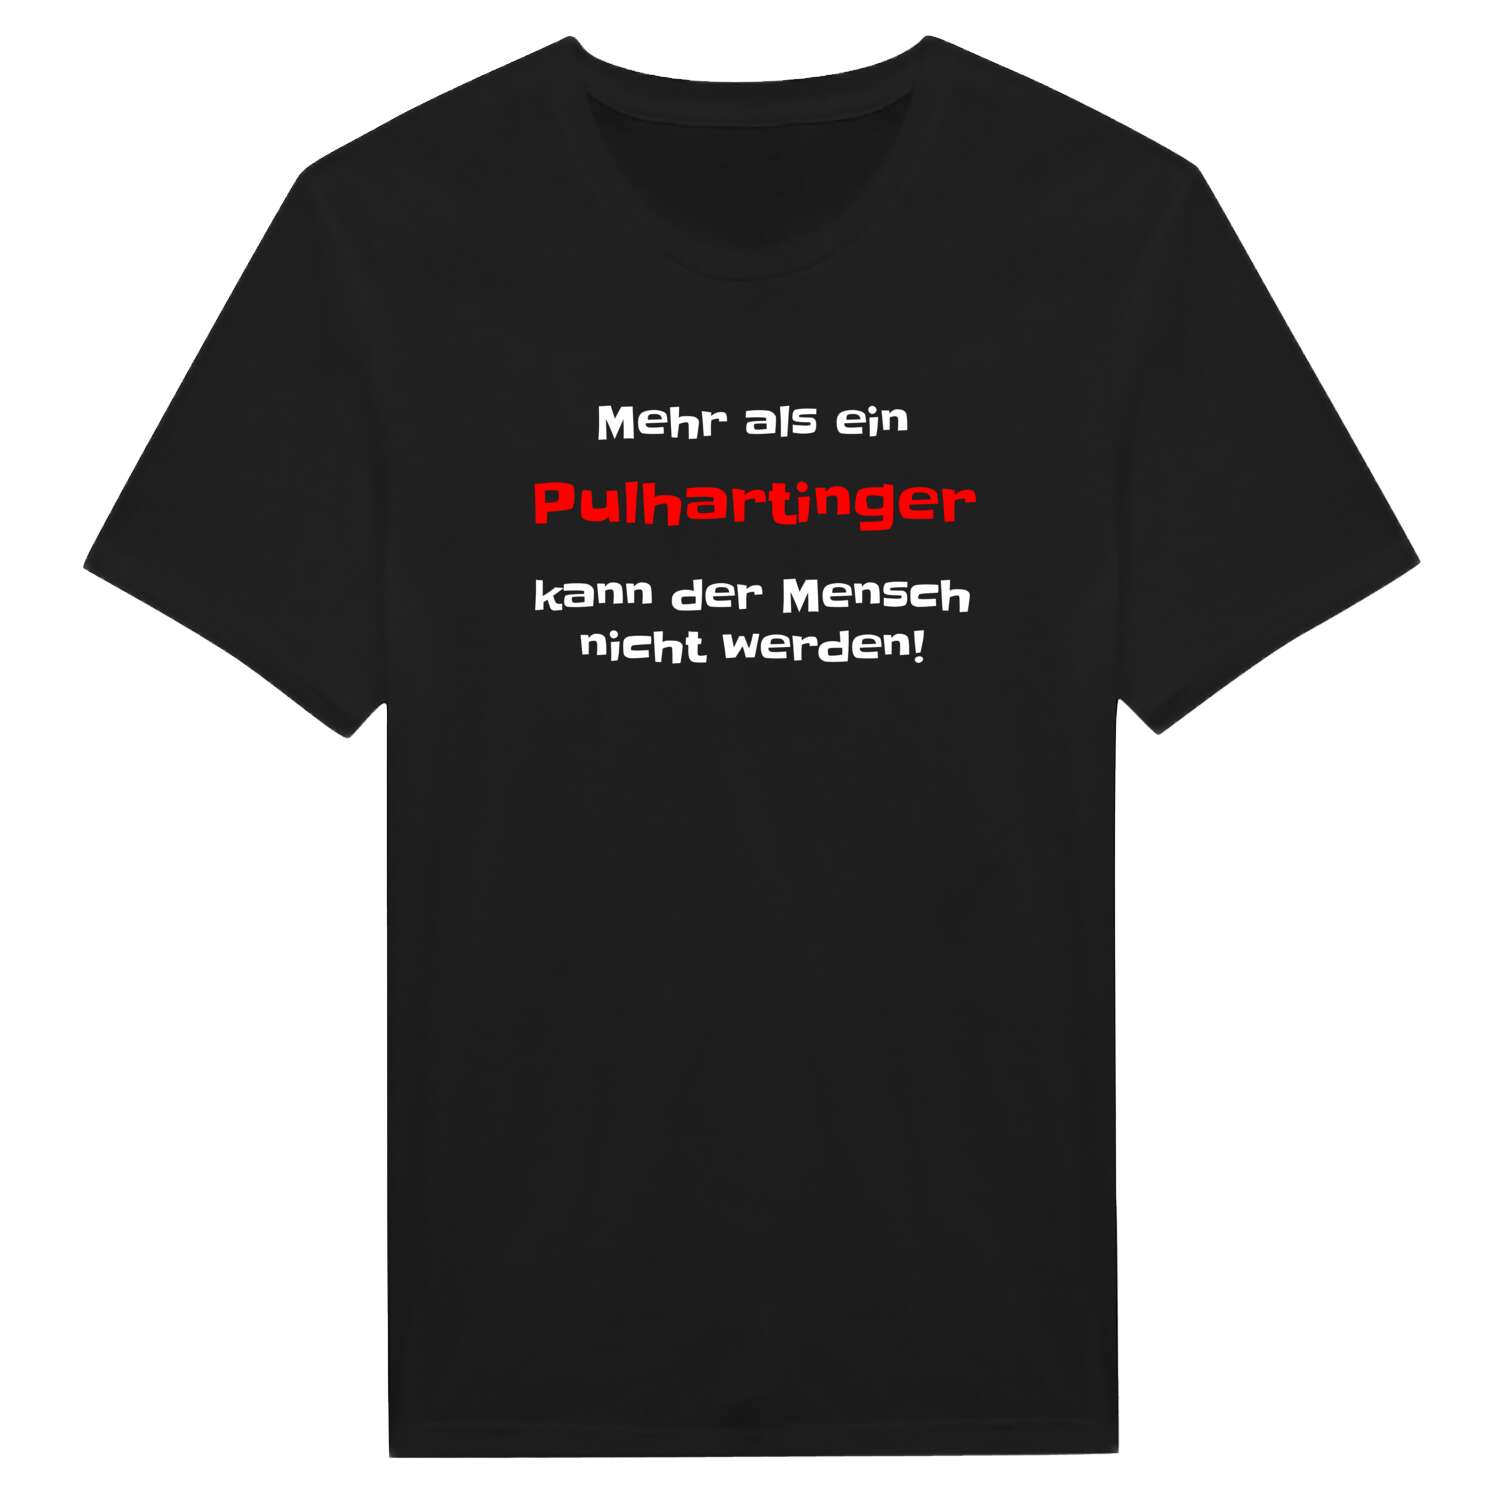 Pulharting T-Shirt »Mehr als ein«